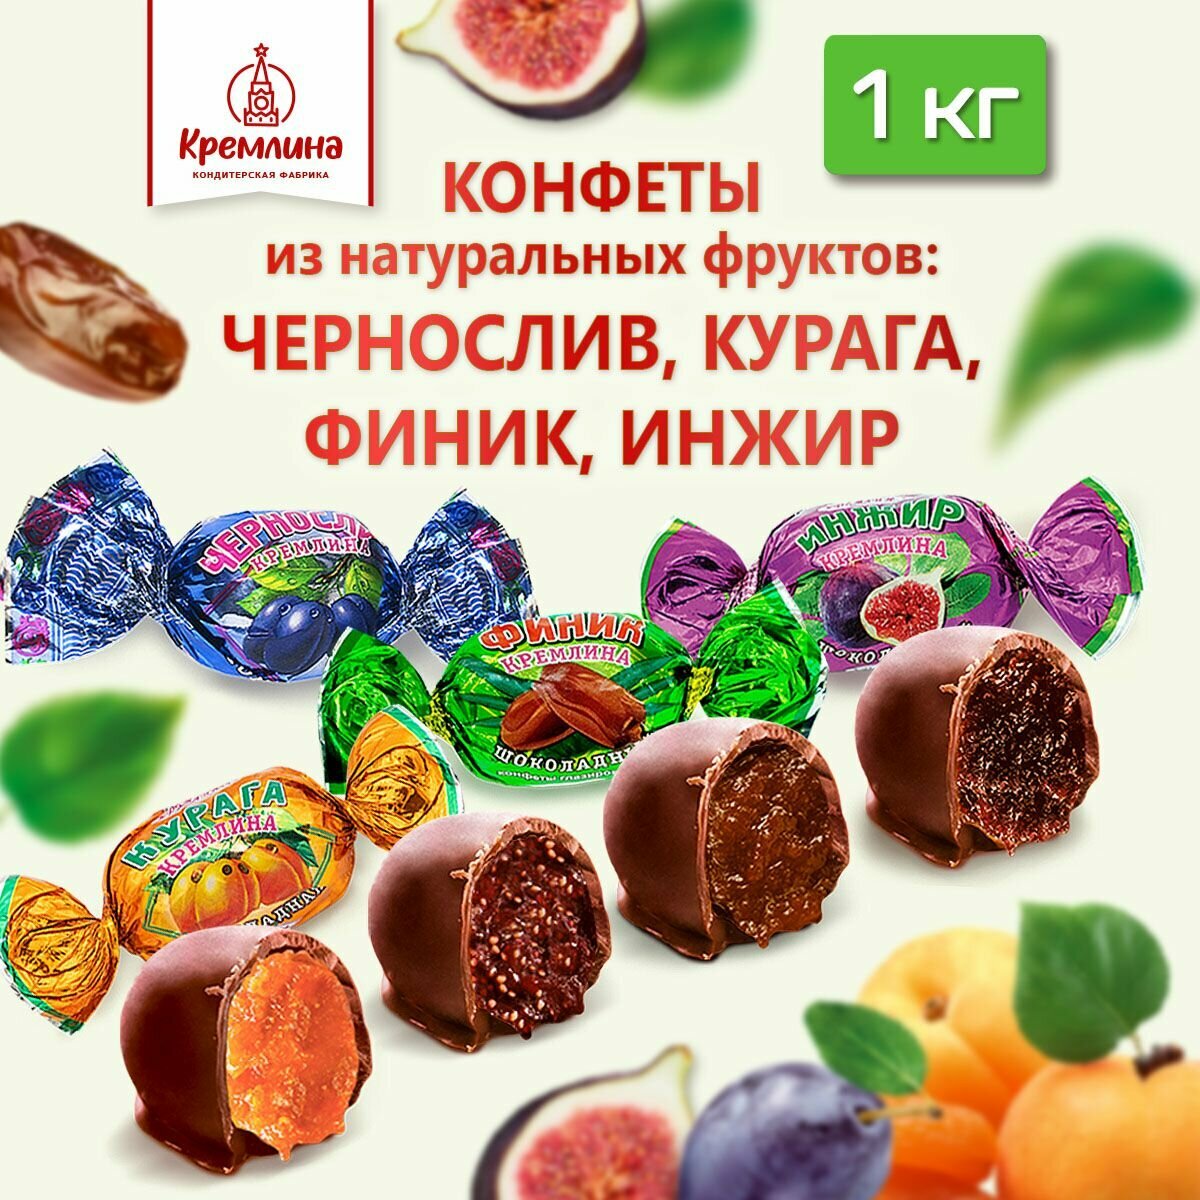 Конфеты из сухофруктов Микс фрукты шоколадные: Чернослив, Инжир, Курага и Финик, пакет 1 кг